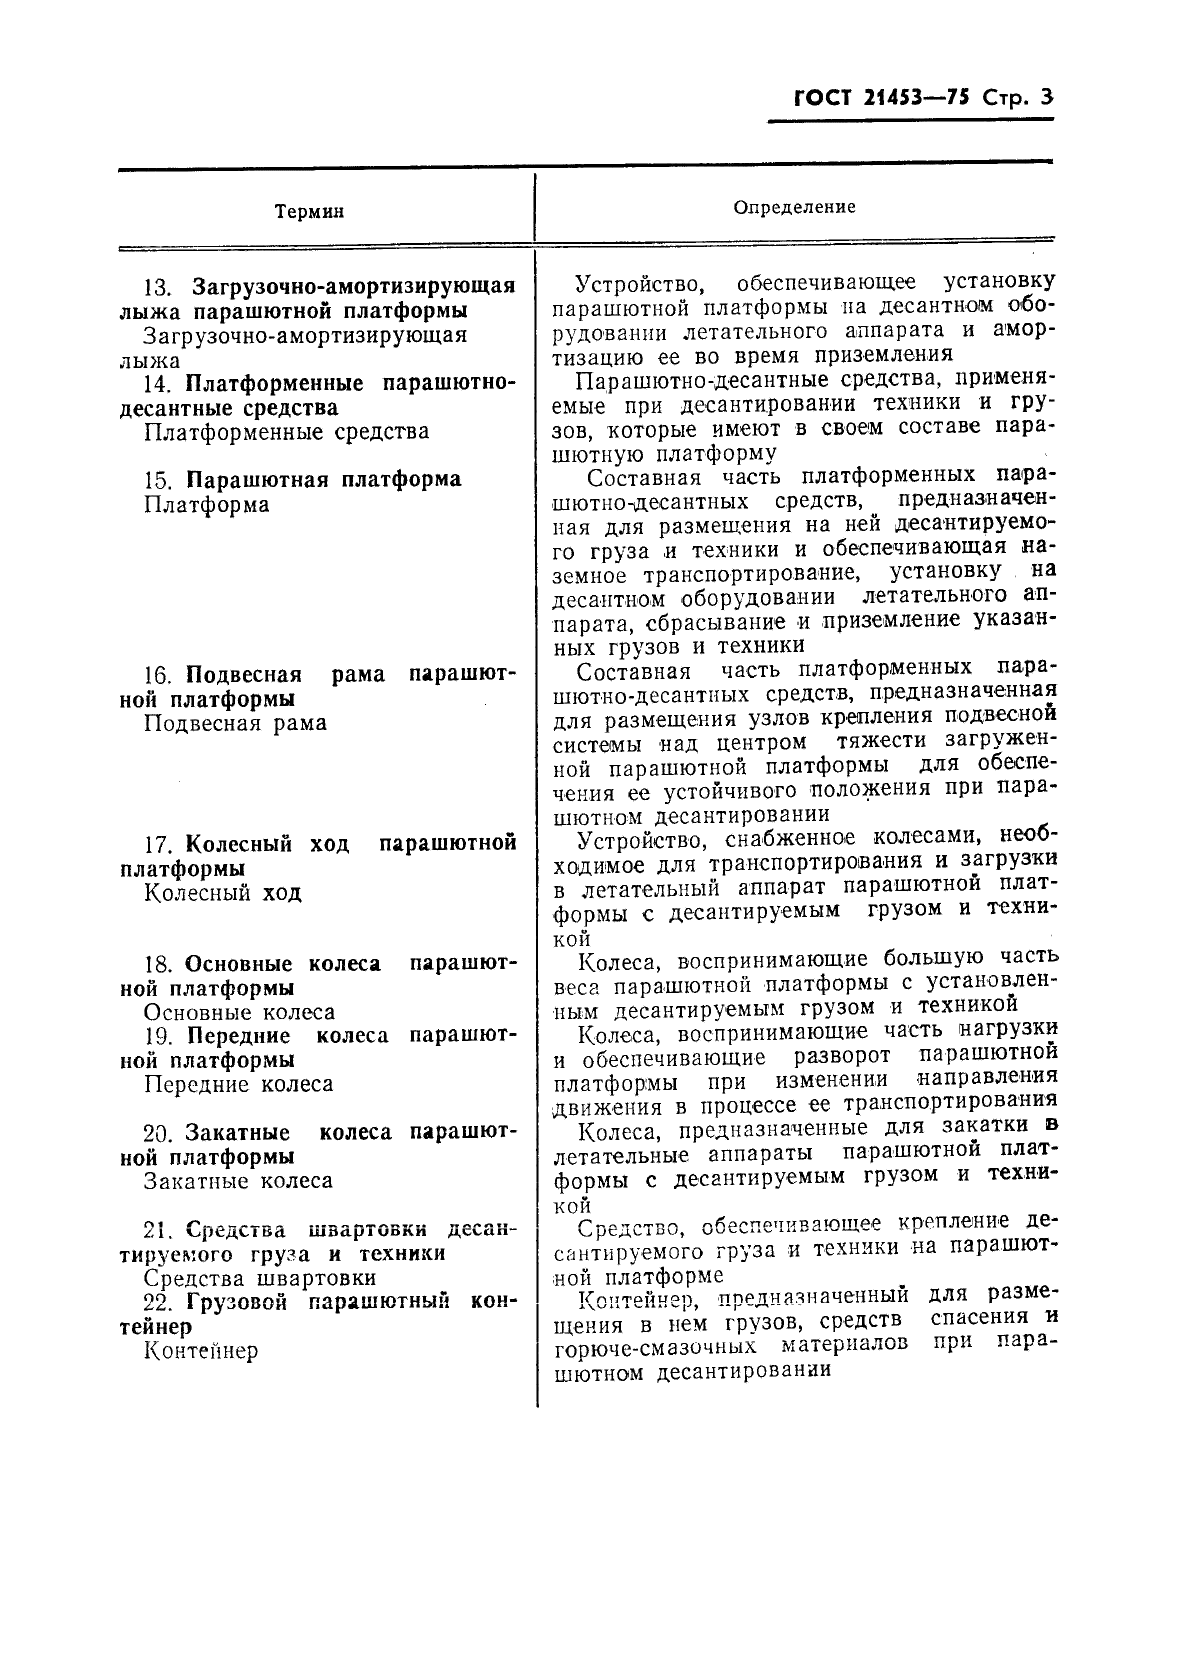 ГОСТ 21453-75 Средства парашютного десантирования грузов и техники. Термины и определения (фото 4 из 6)